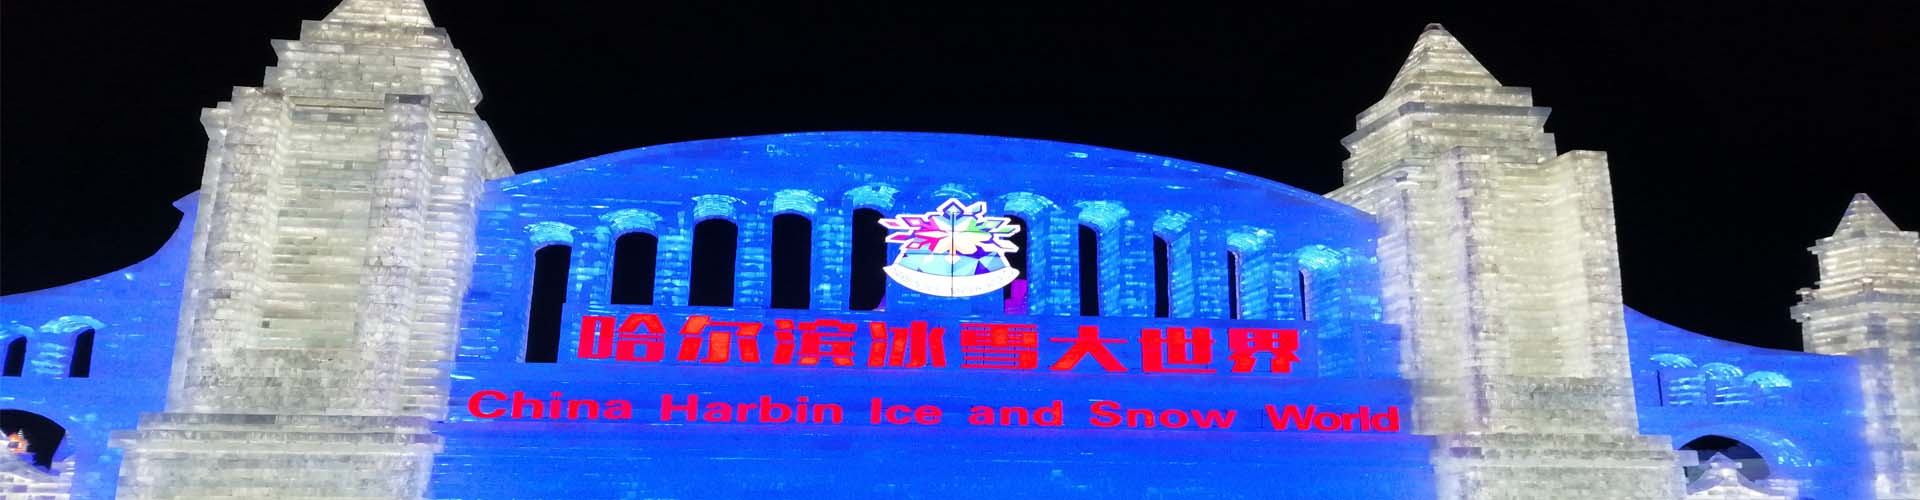 Monde de glace et neige de Harbin